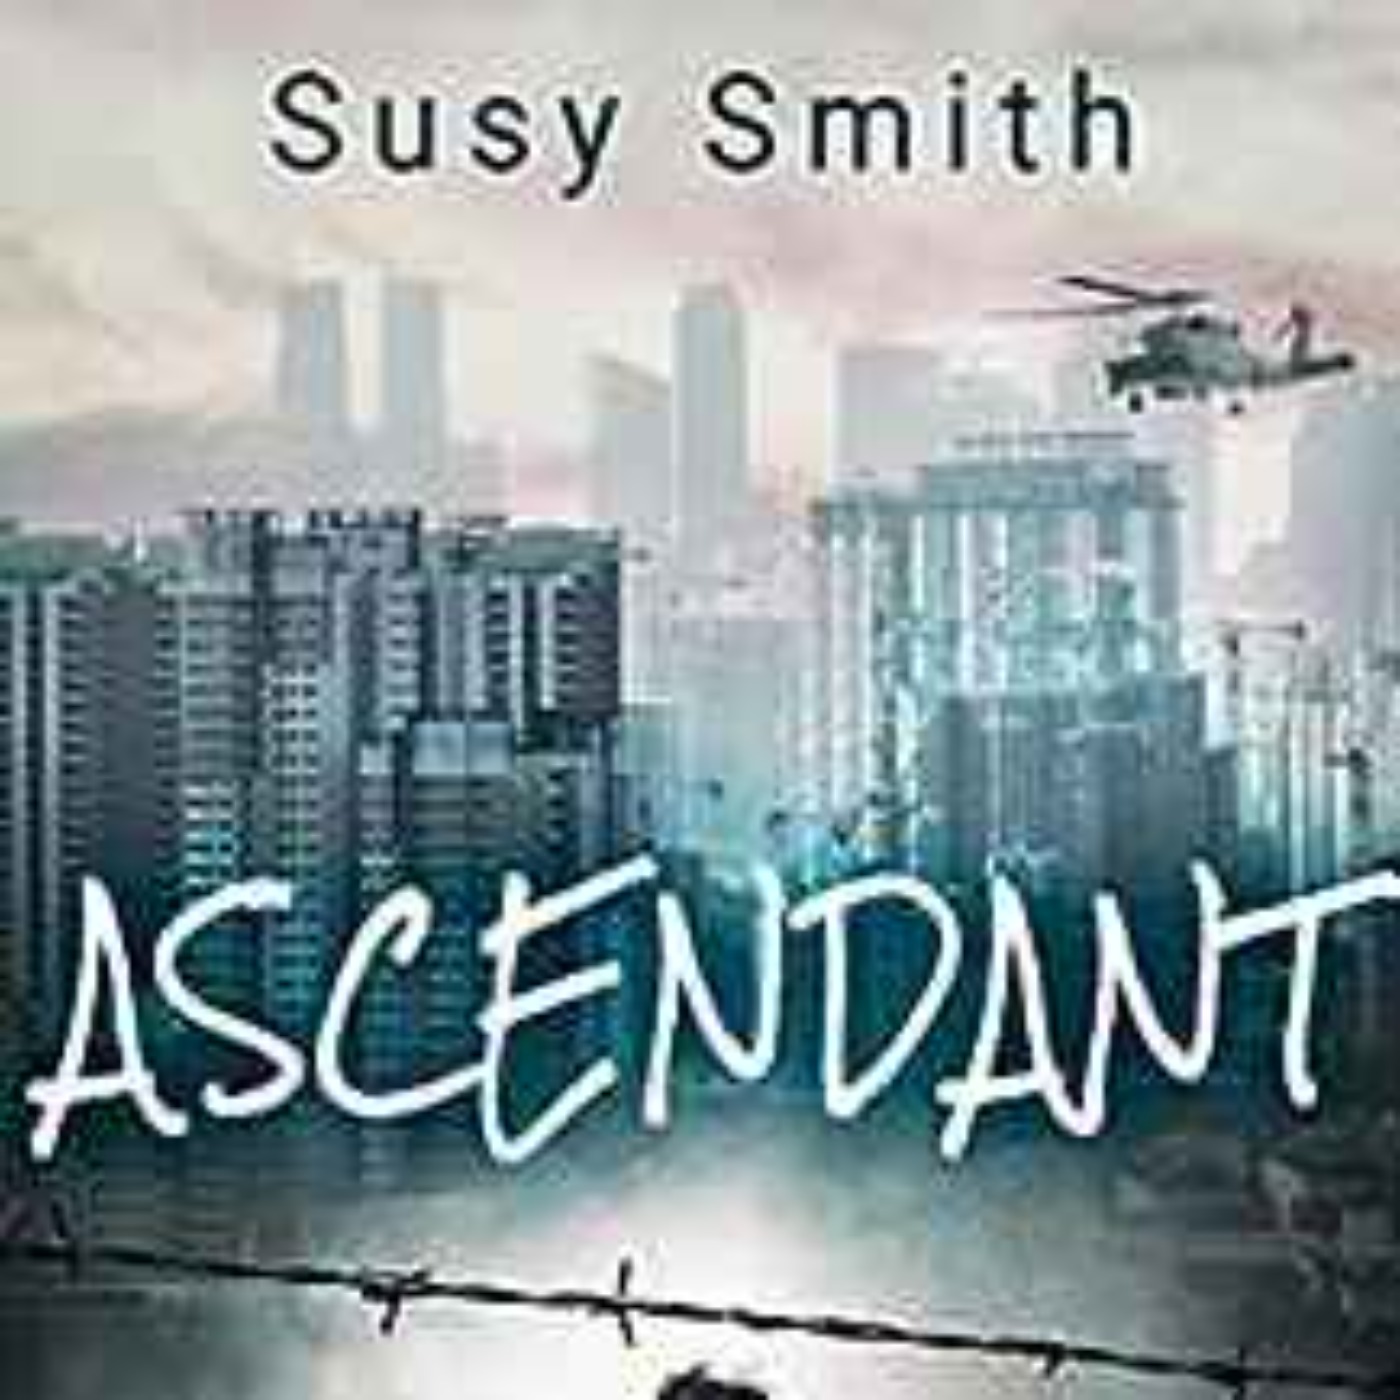 Susy Smith - Ascendant